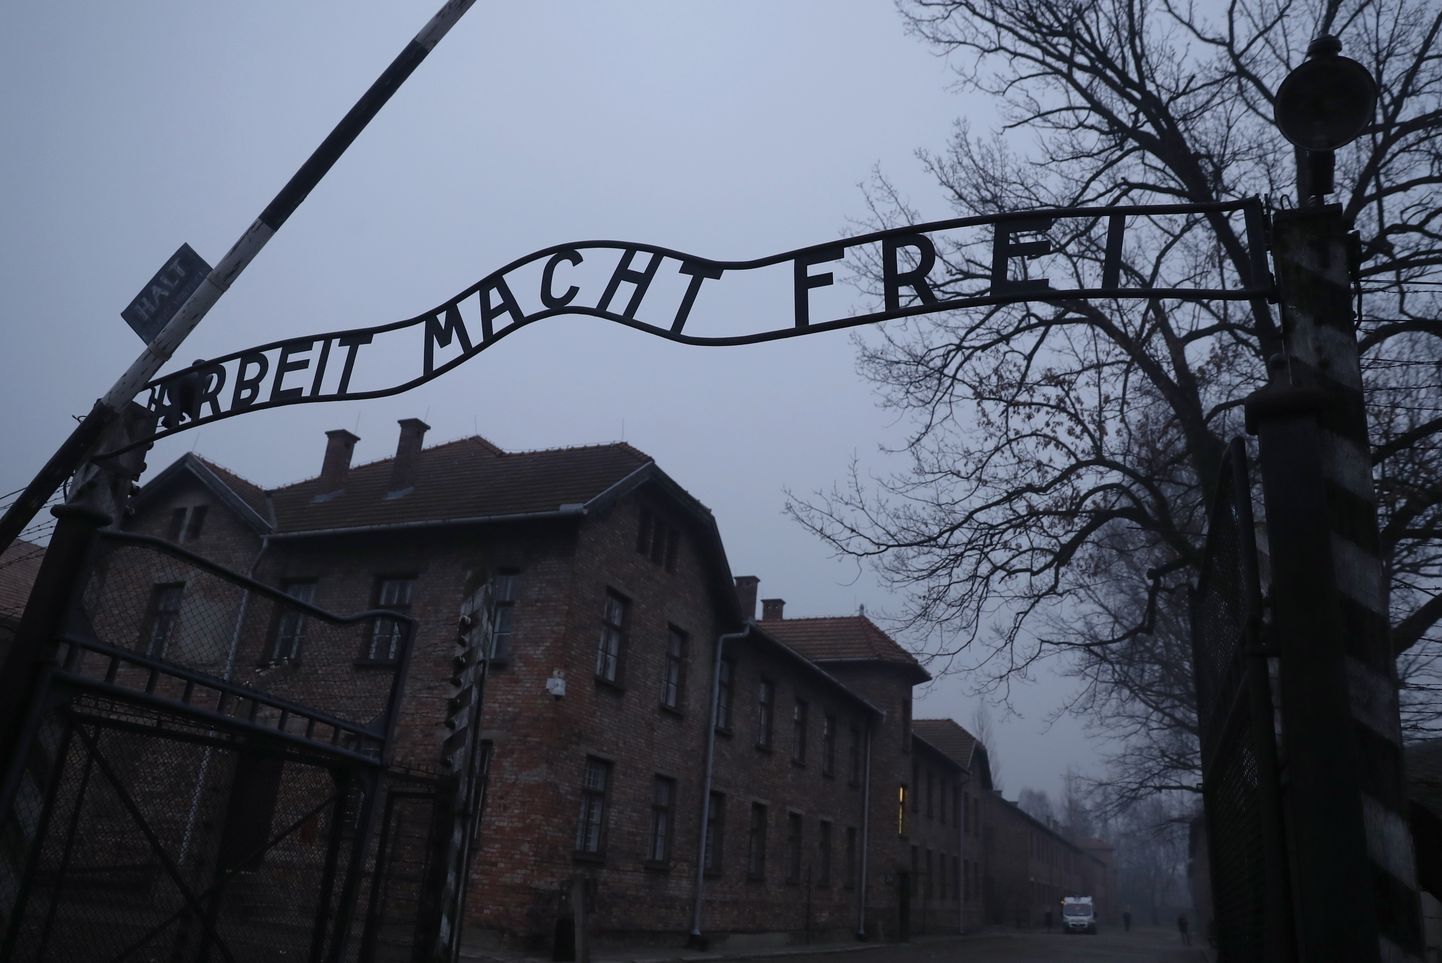 Natsi-Saksamaa suurim ja tuntuim Teise maailmasõja aegne koonduslaager oli okupeeritud Poolas asuv Auschwitzi (Oświęcimi) koonduslaager. Pildil laagri värav koos raudsildiga «Arbeit macht frei» (eesti keeles «Töö teeb vabaks»).